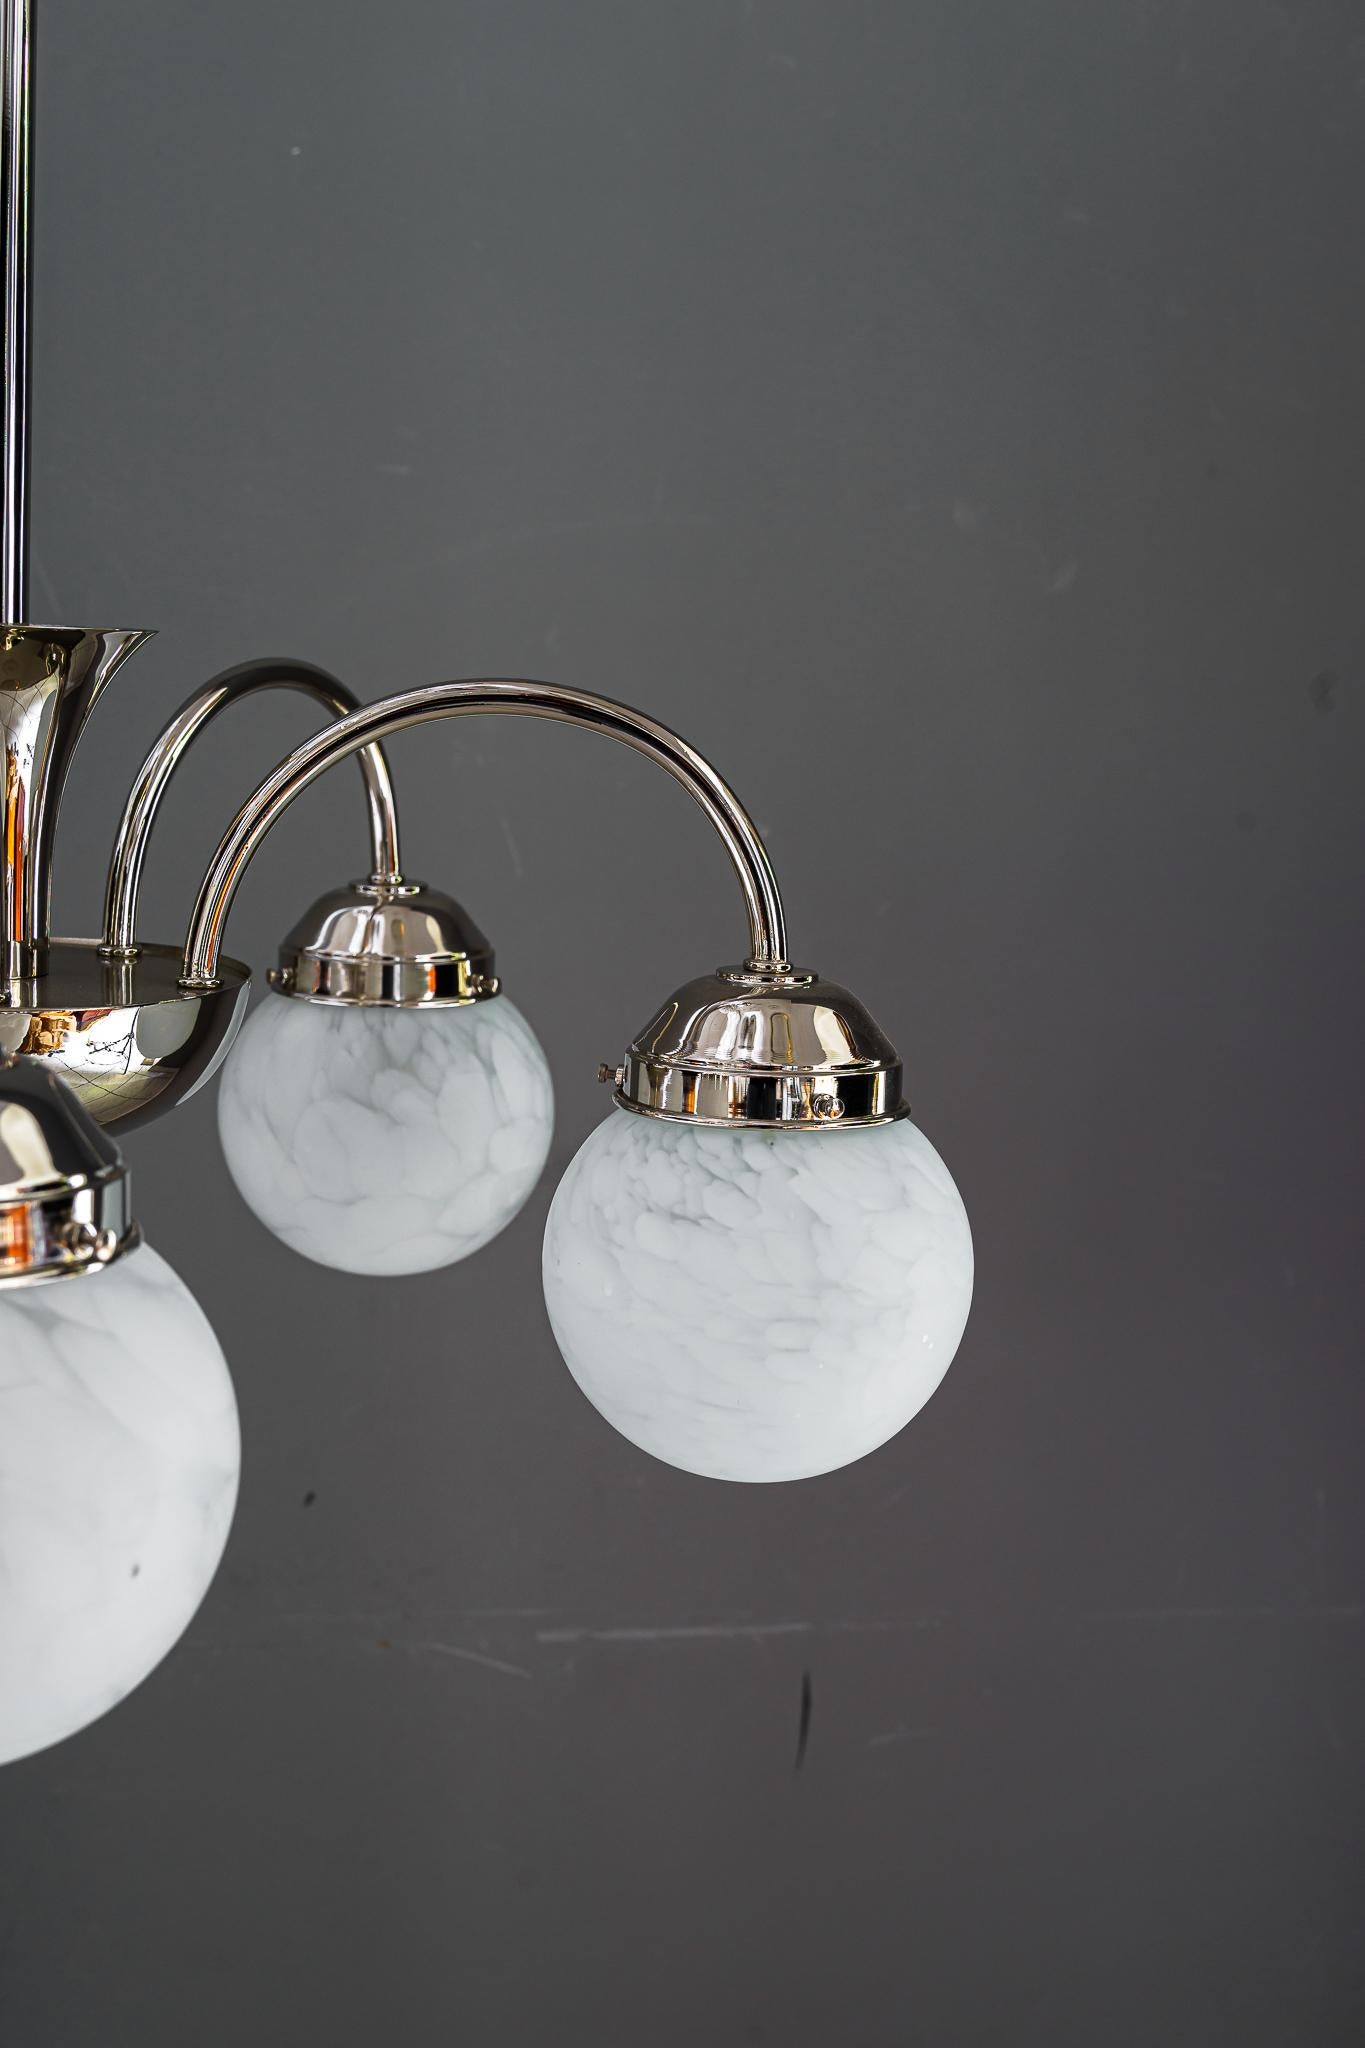 Art deco chandelier vienna around 1920s
Brass nickel- plated
Original antique glass shades.